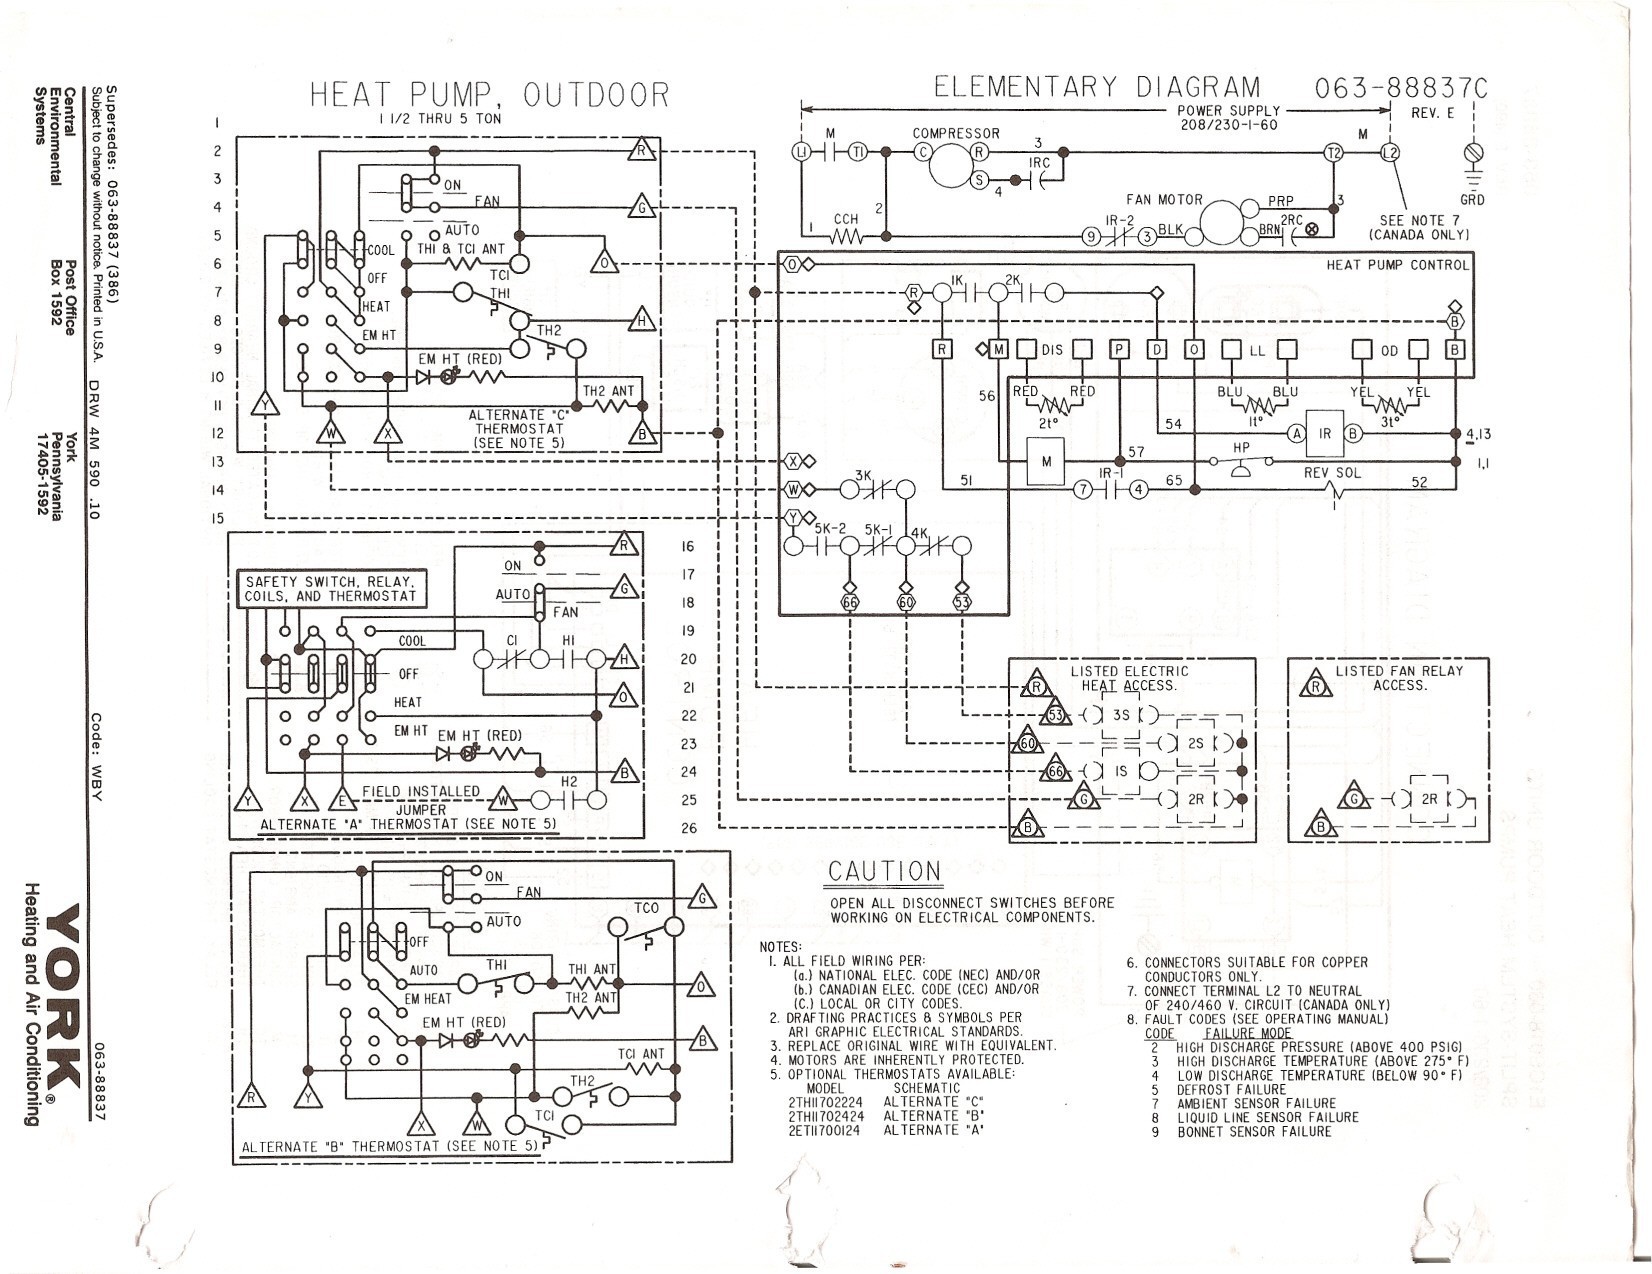 Wiring Diagram Carrier Air Conditioner Fresh Bryant Heat Pump